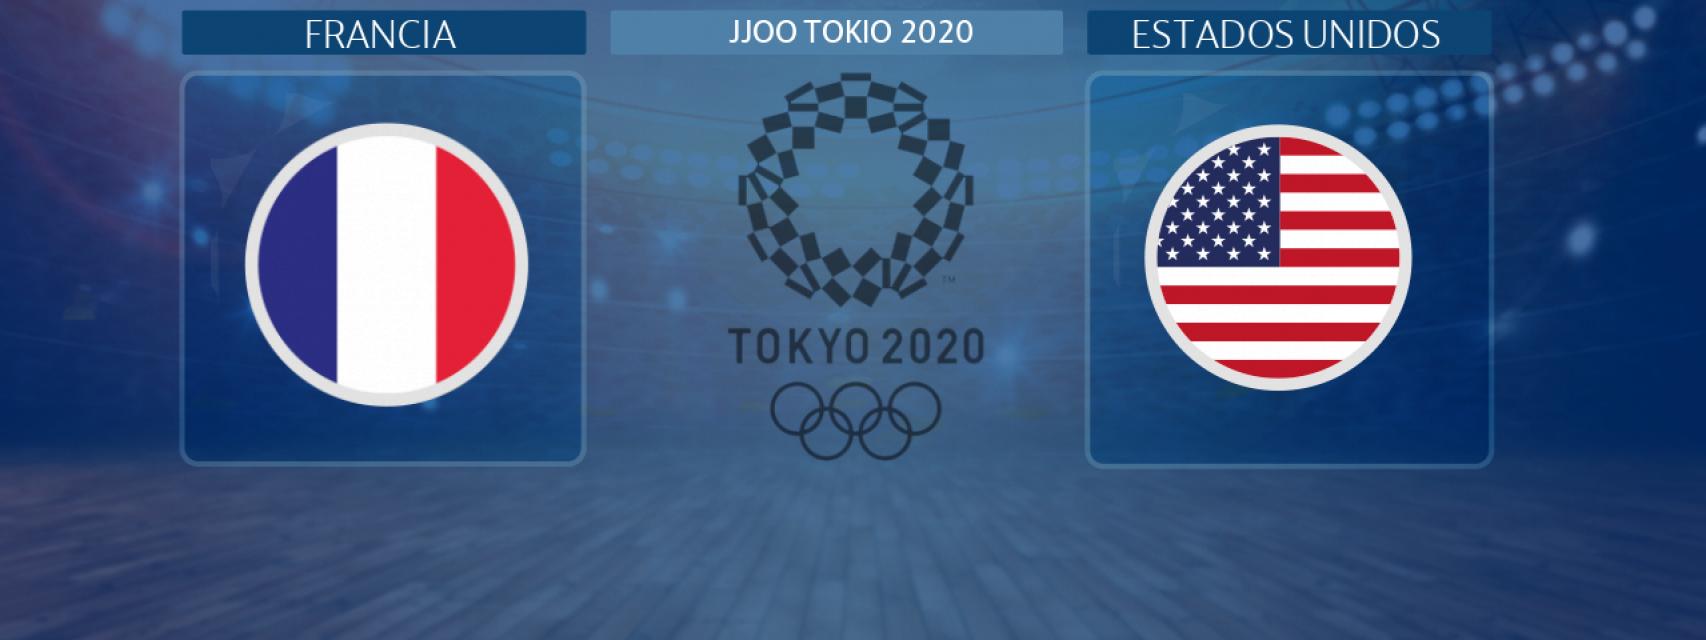 Francia - Estados Unidos, la final de baloncesto masculino de los JJOO Tokio 2020